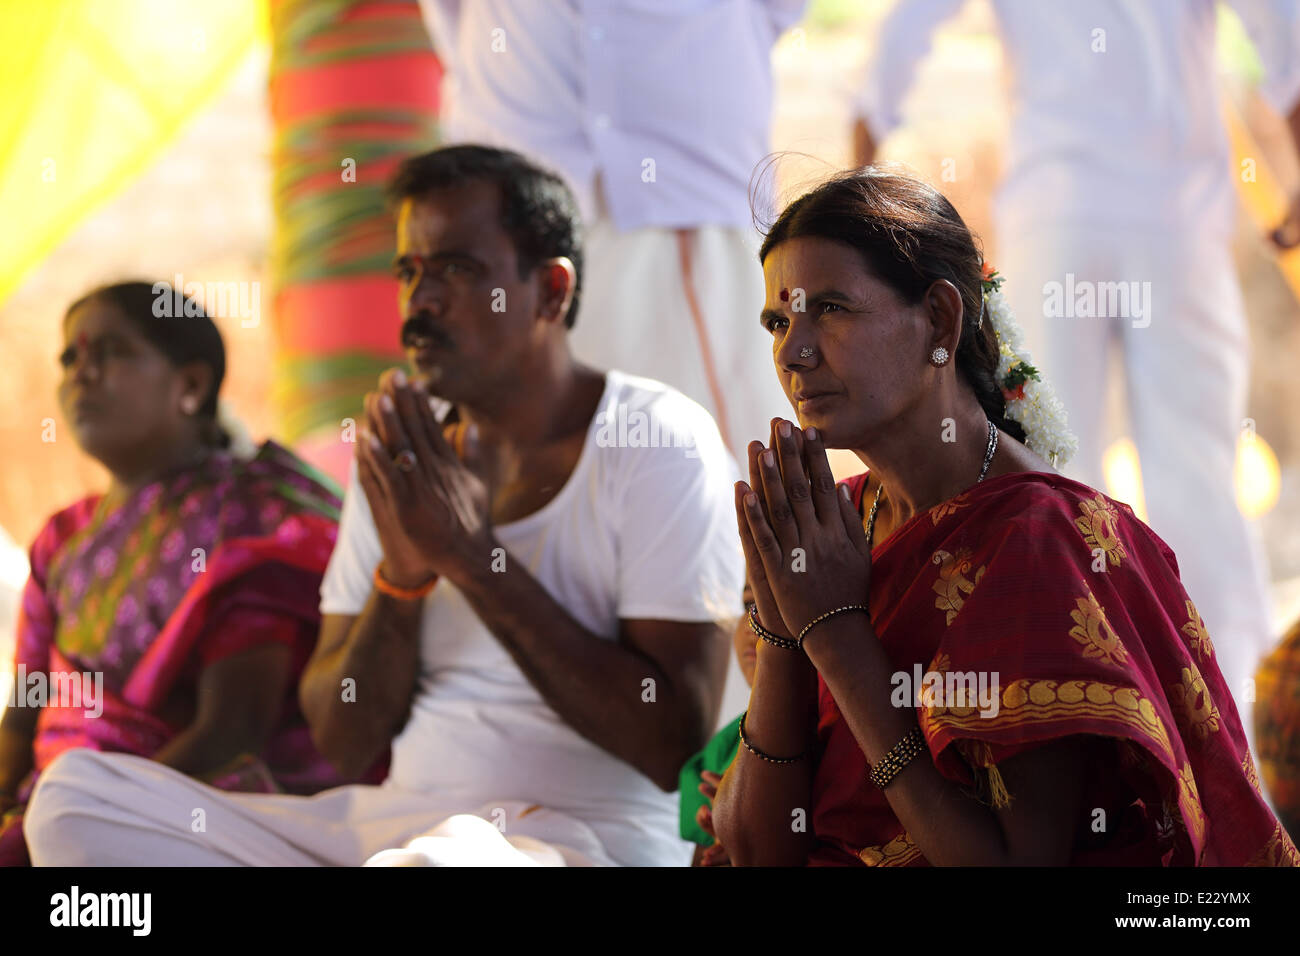 Les indiens au cours d'une cérémonie hindoue en Inde Banque D'Images